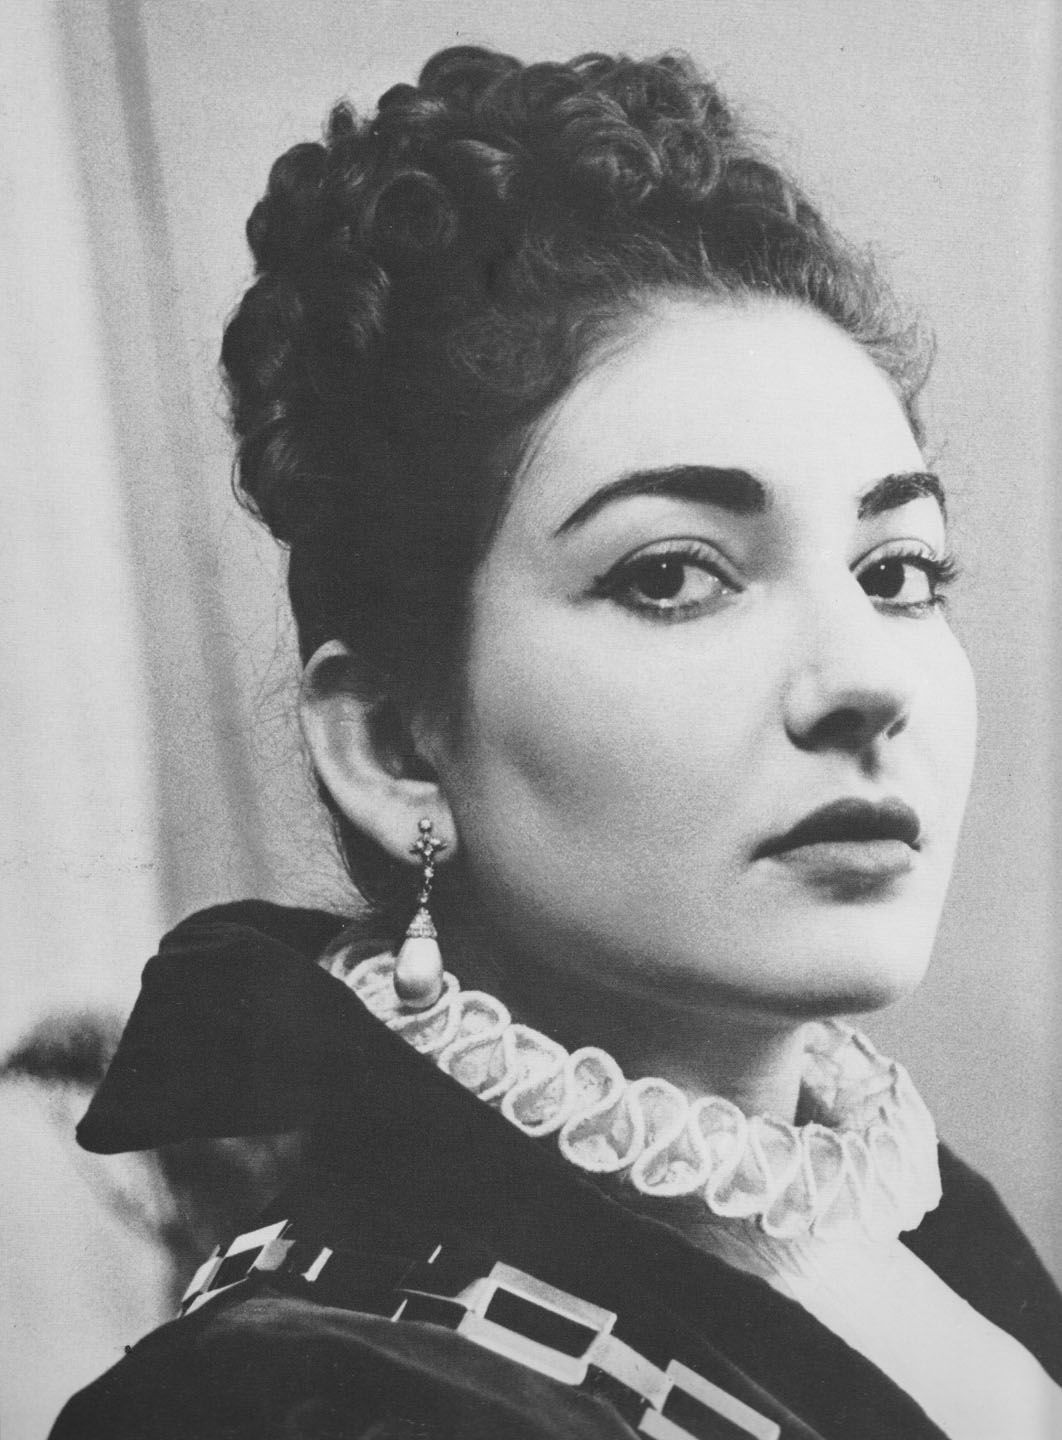 Pictures of Maria Callas